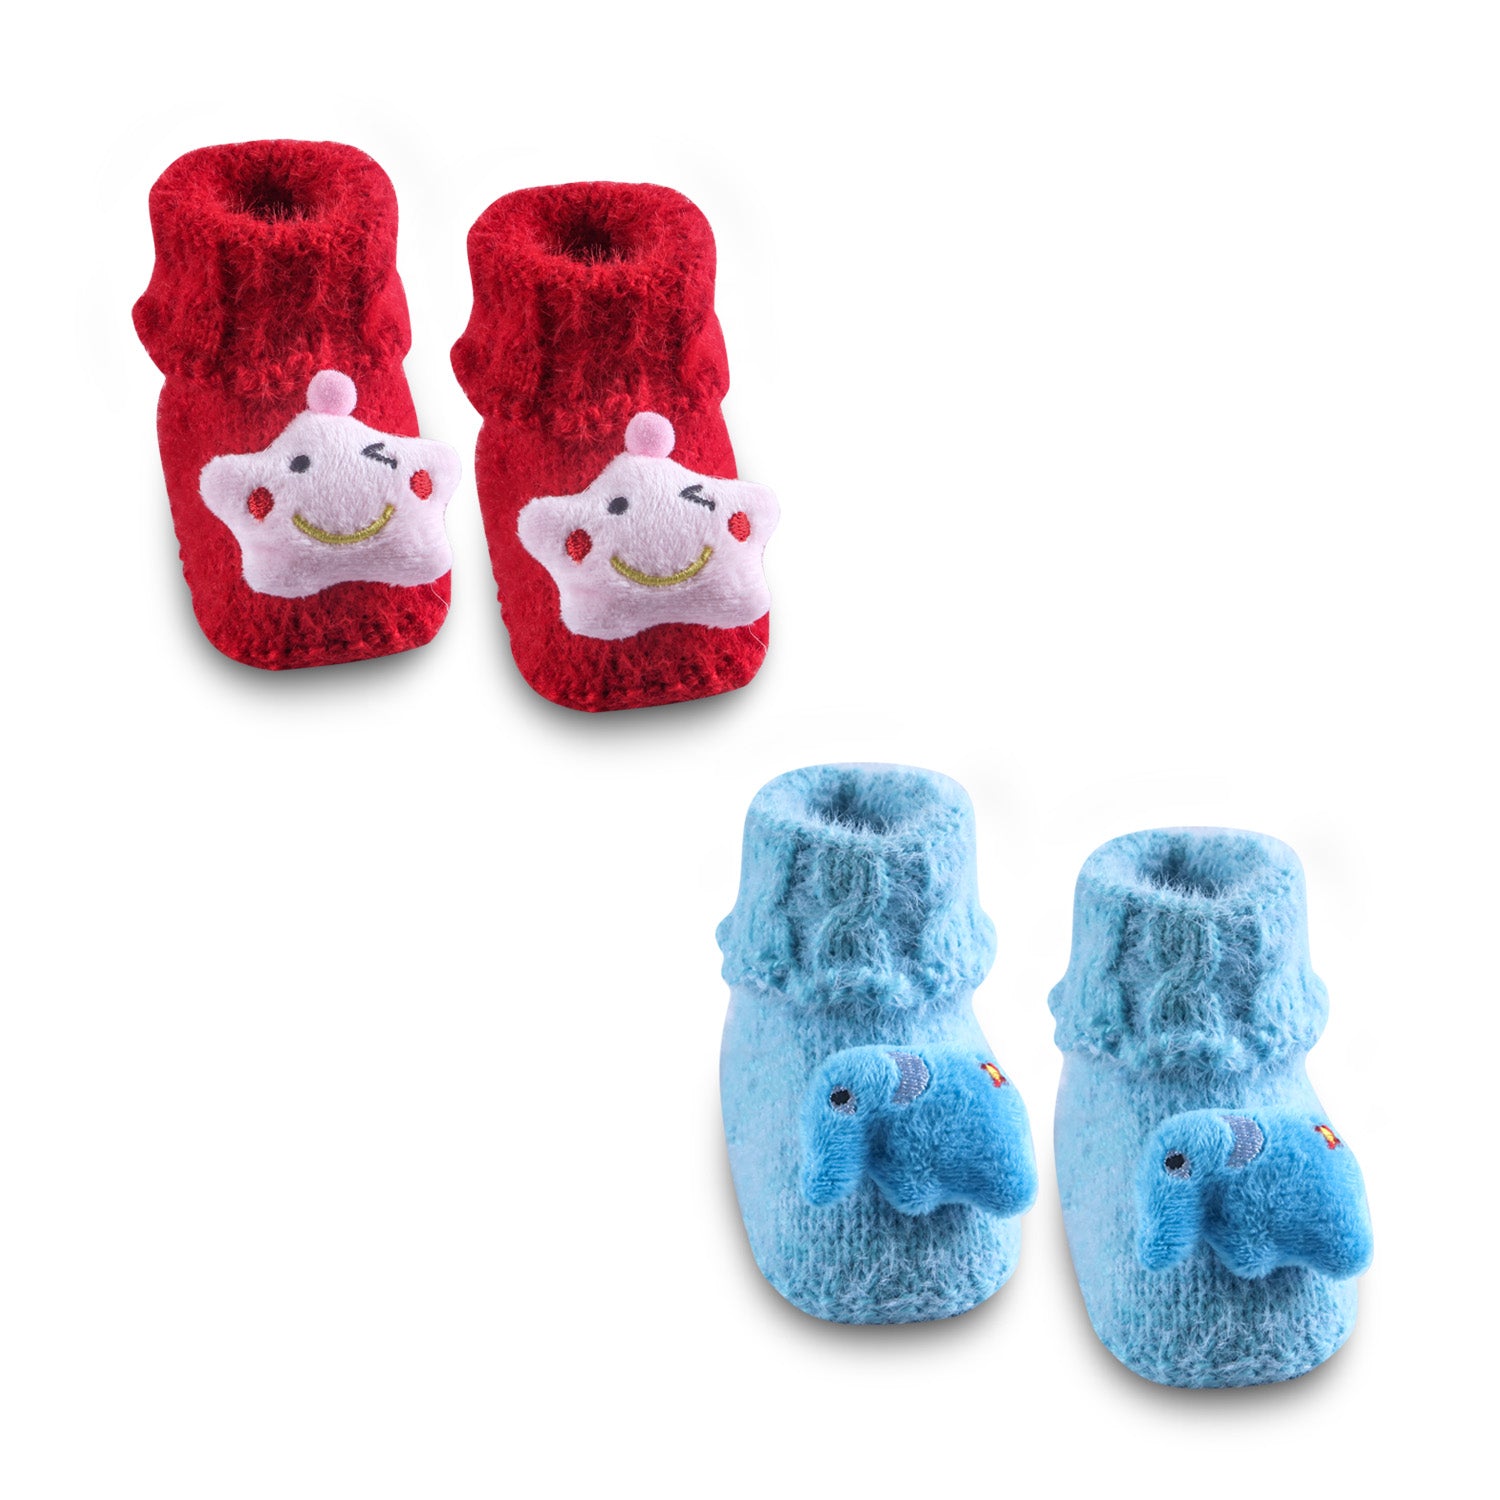 Newborn Crochet Woollen Booties Star Elephant - Blue, Red